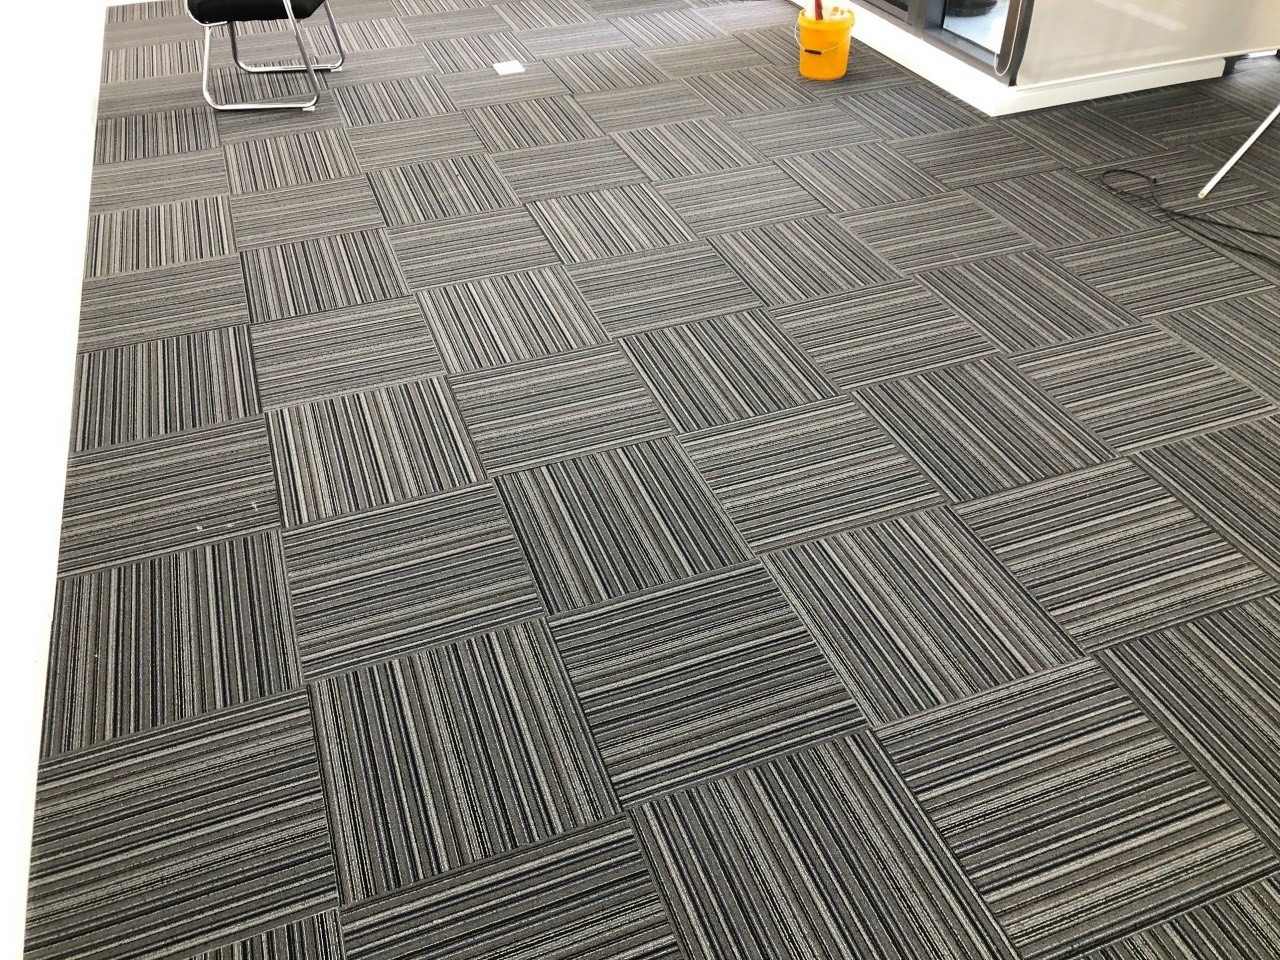 Thảm trải sàn thường được dùng tại văn phòng làm việc nhằm mang đến không gian sang trọng, lịch thiệp